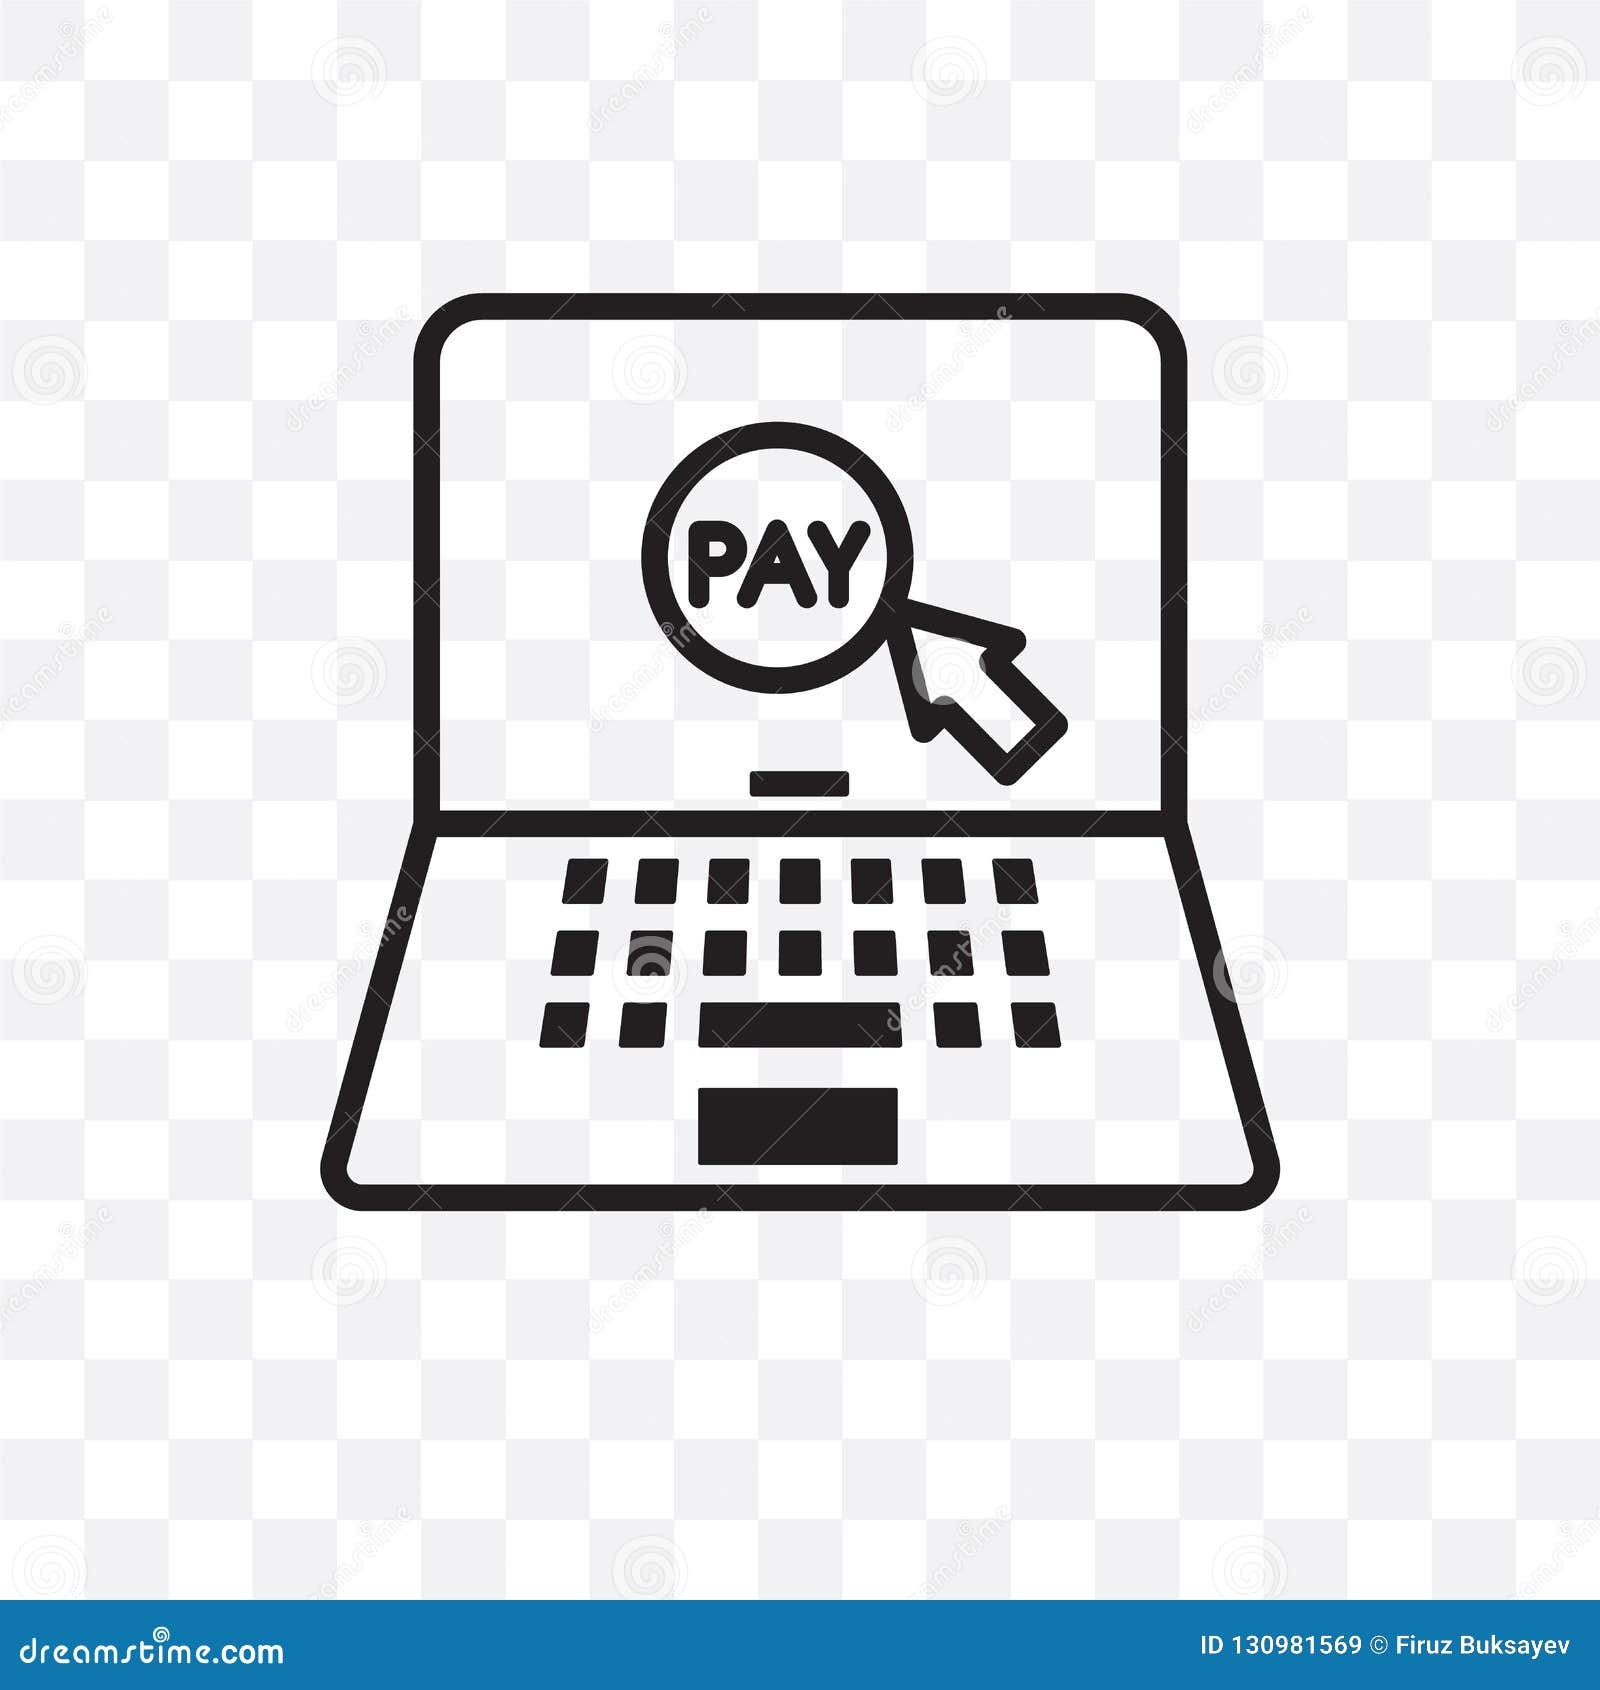 Thanh toán trực tuyến chưa bao giờ dễ dàng đến thế! Biểu tượng đường thẳng tự tin và hiện đại sẽ đem lại cho bạn sự tiện lợi và an tâm khi thanh toán mọi chi tiêu.